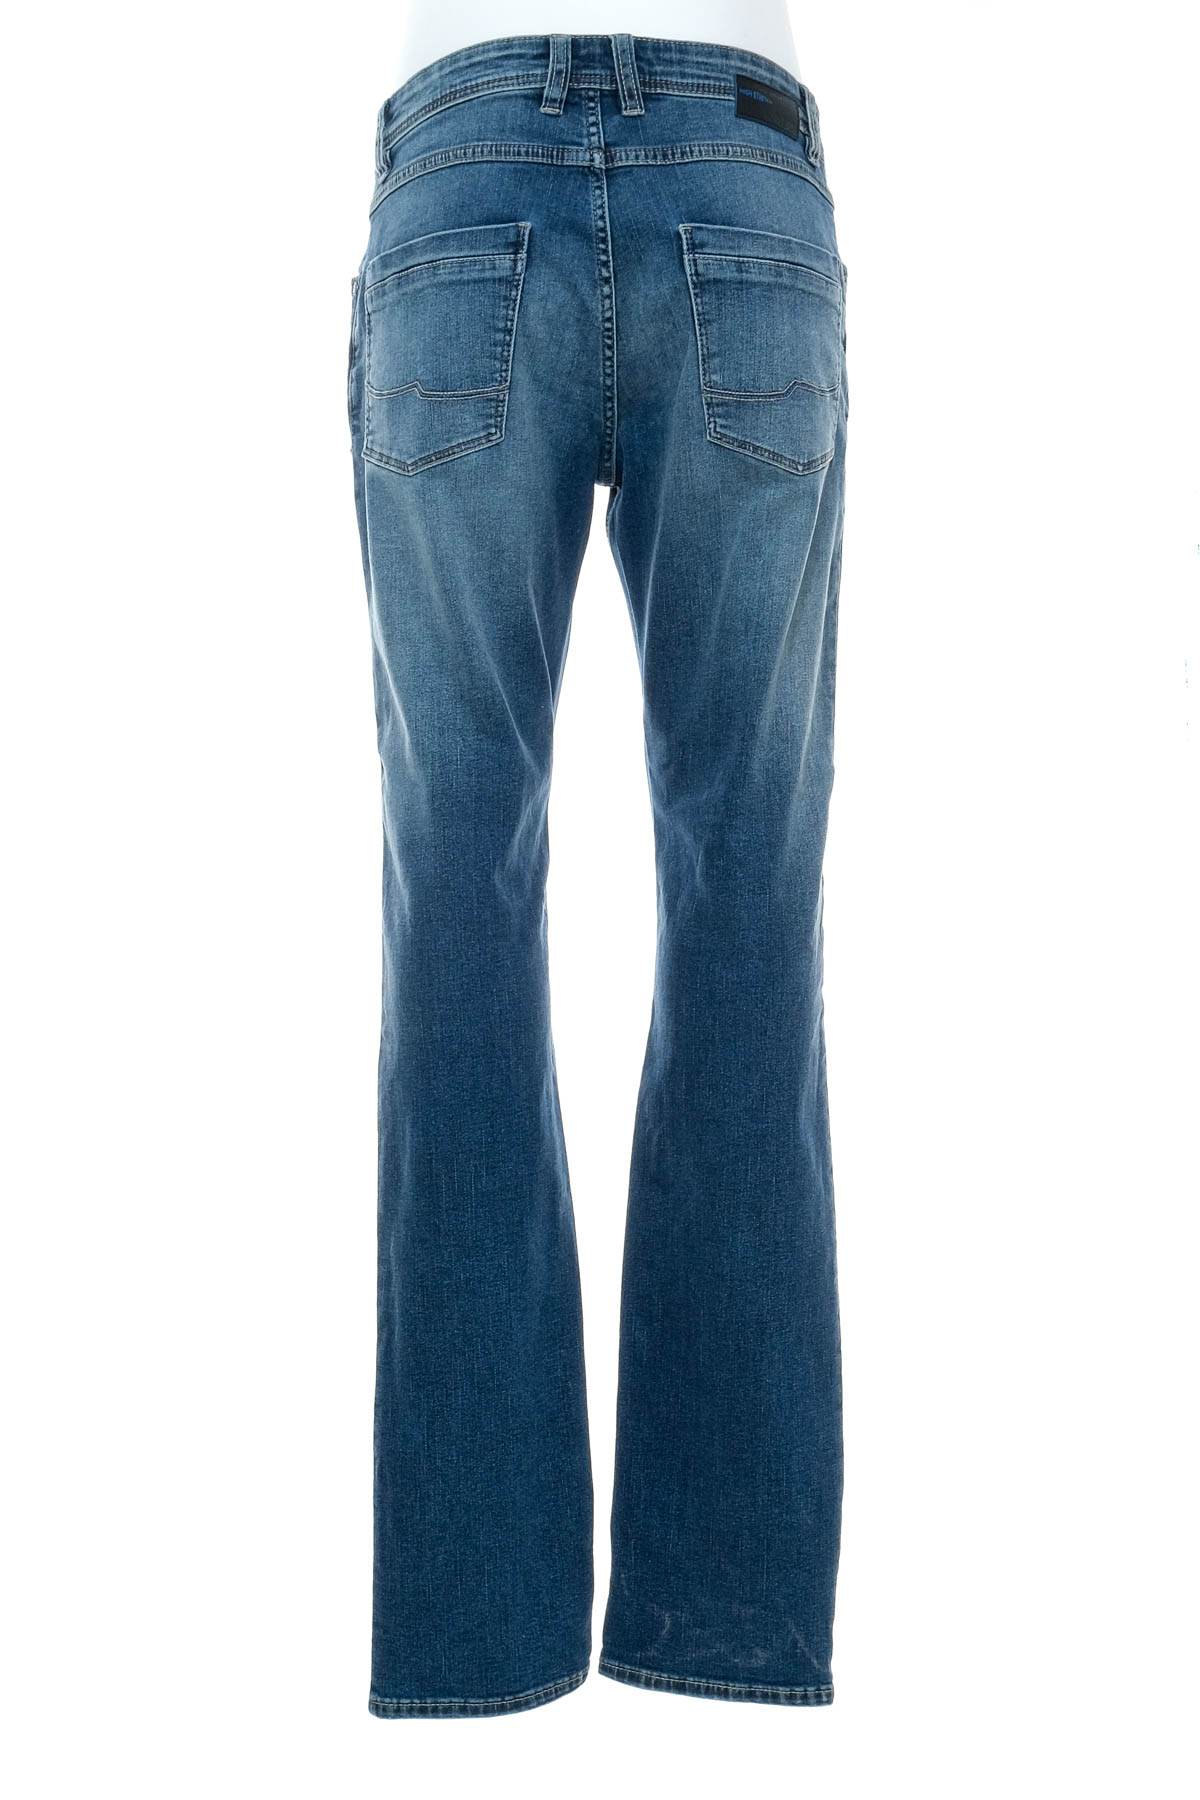 Men's jeans - Jean Carriere - 1